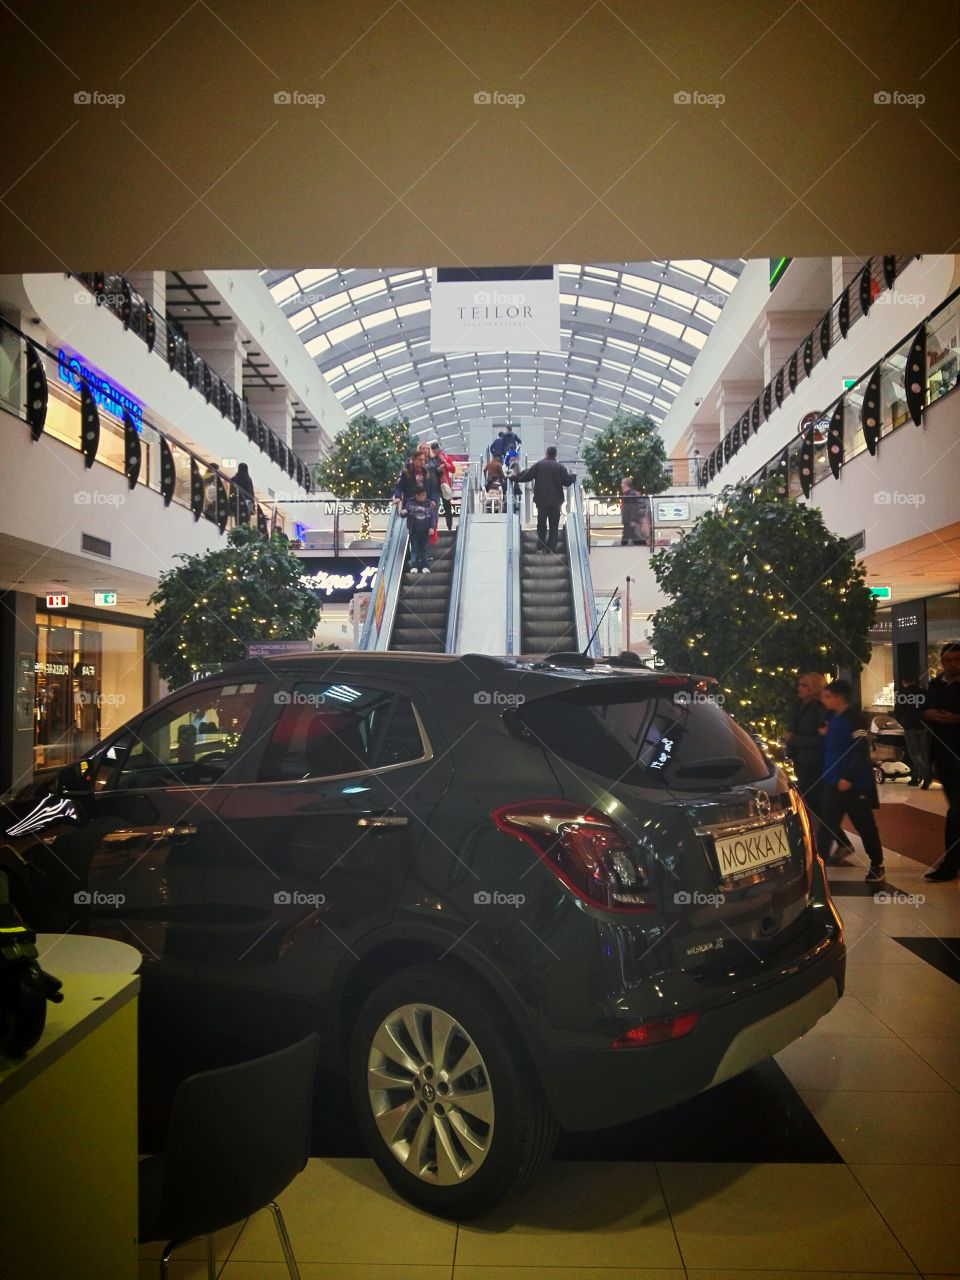 Shopping Center